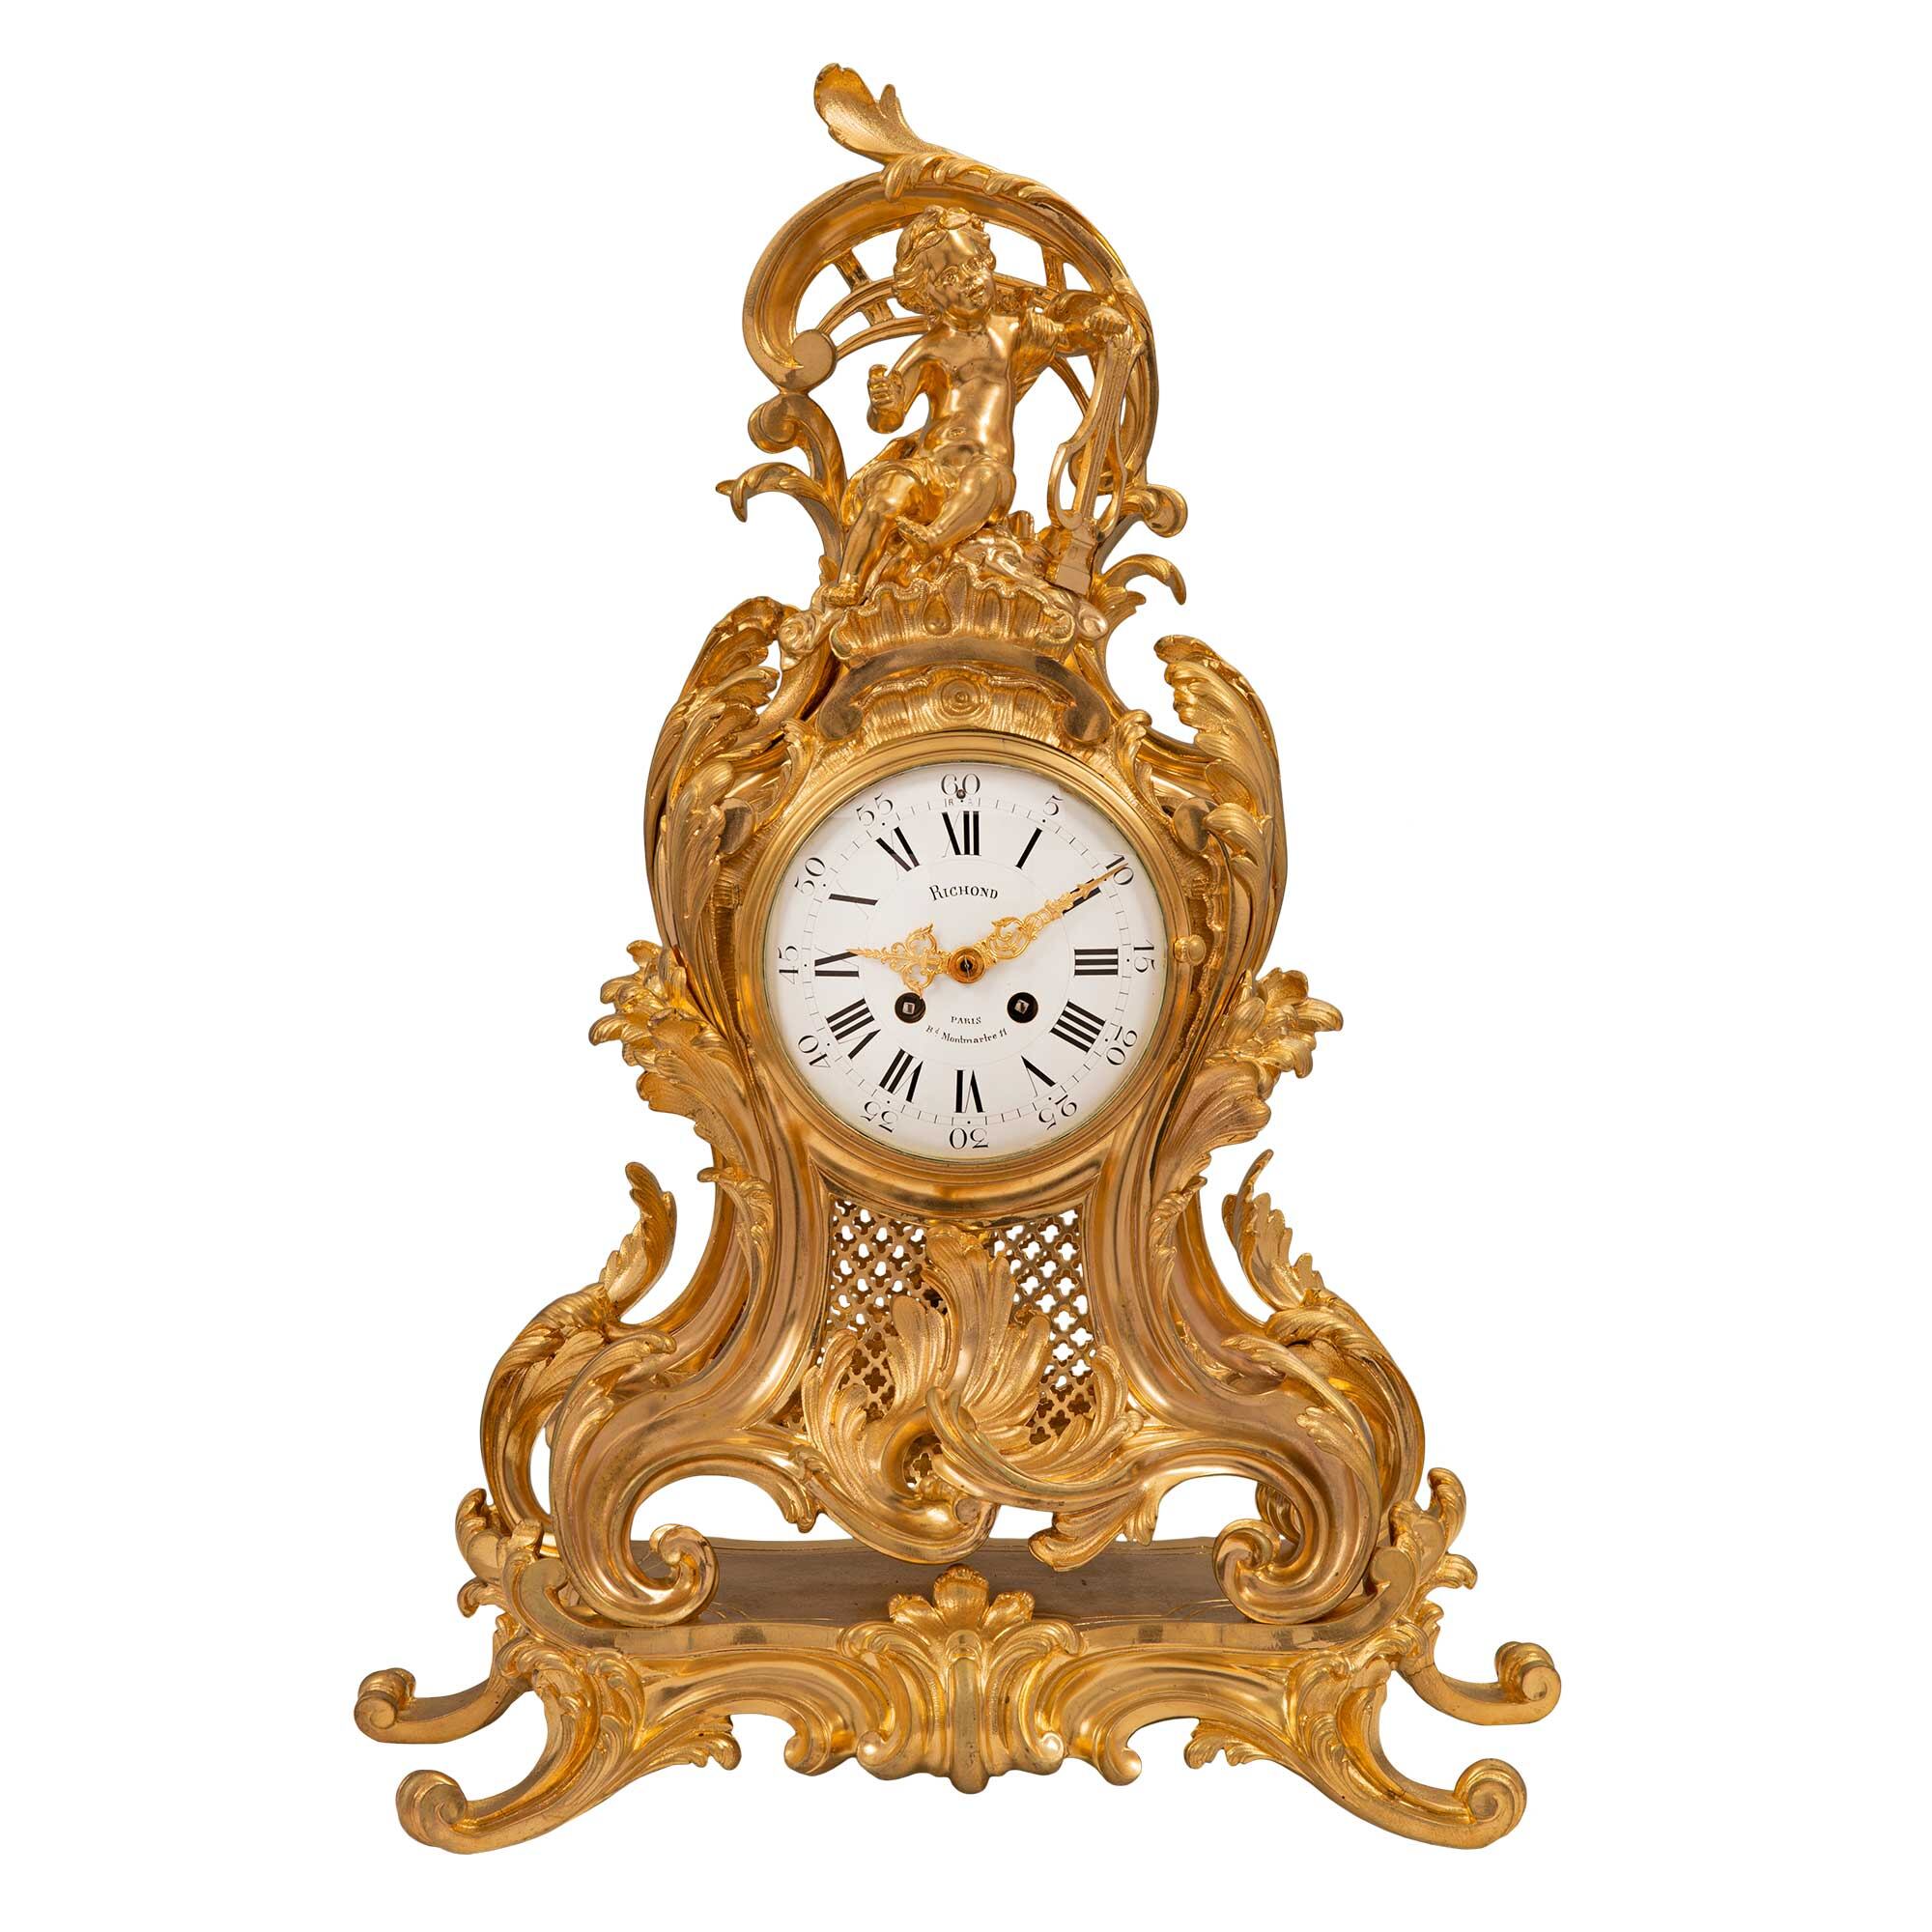 the ormolu clock